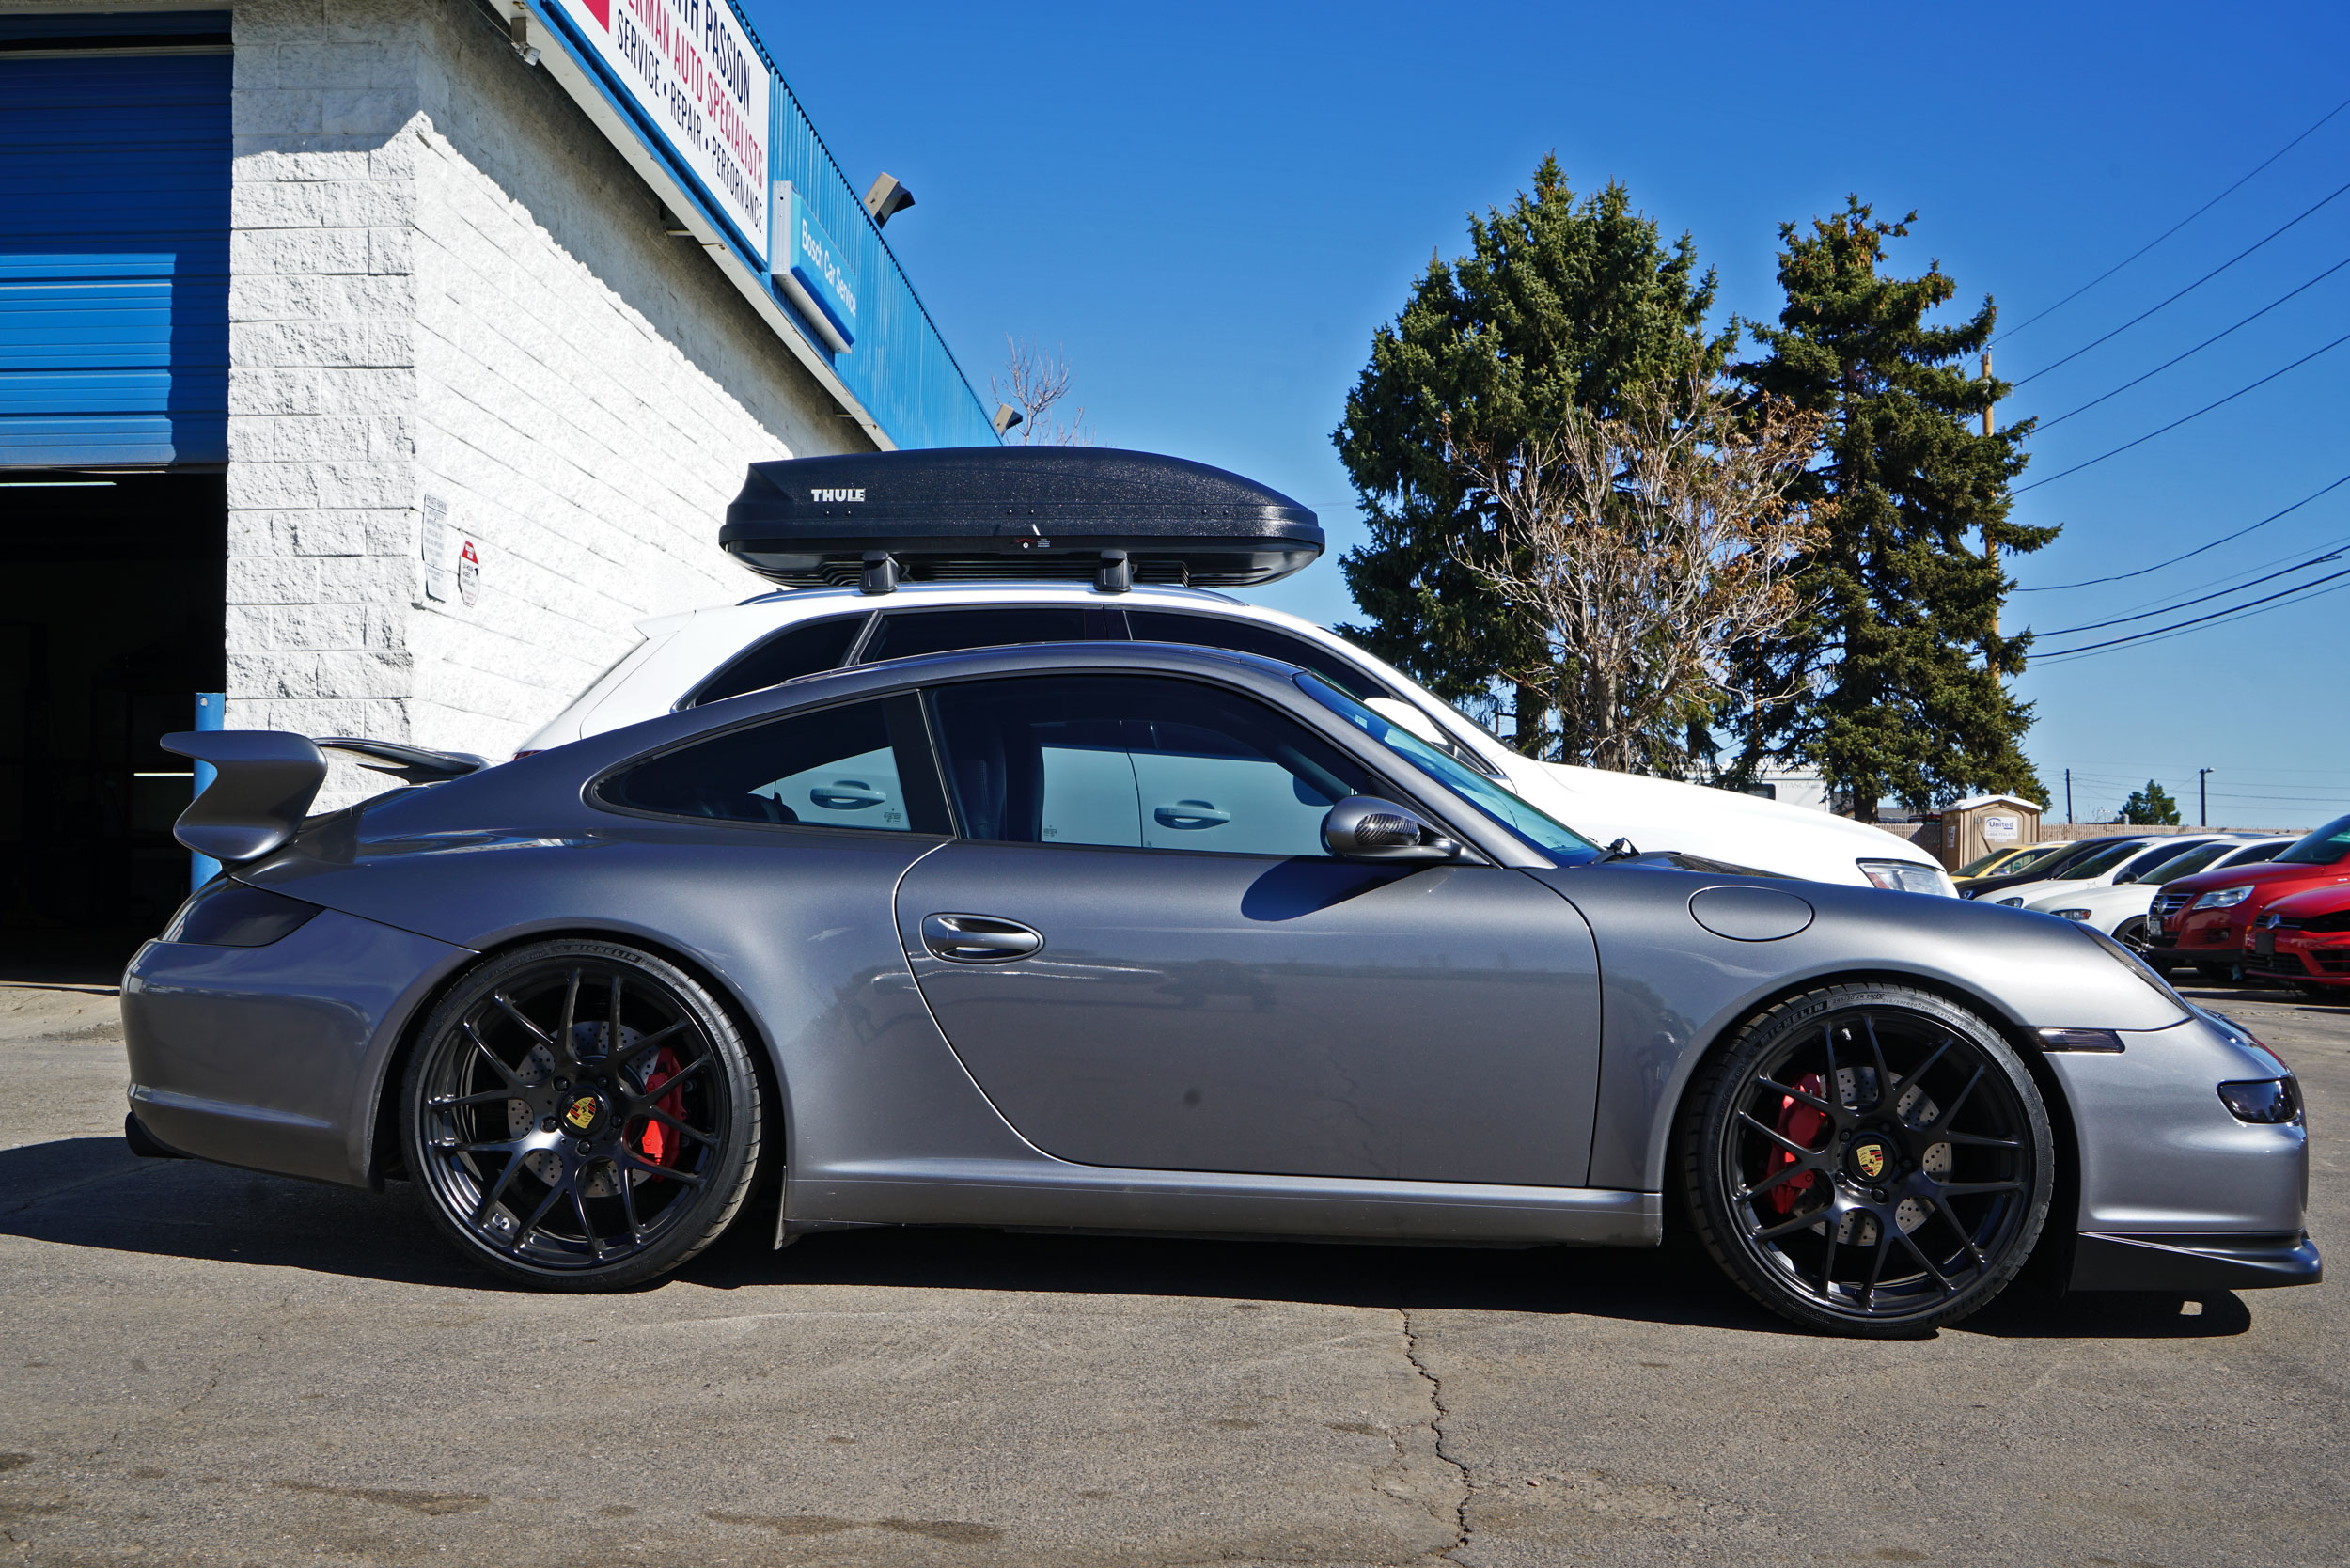 Bluewater Performance Porsche repair shop in Denver